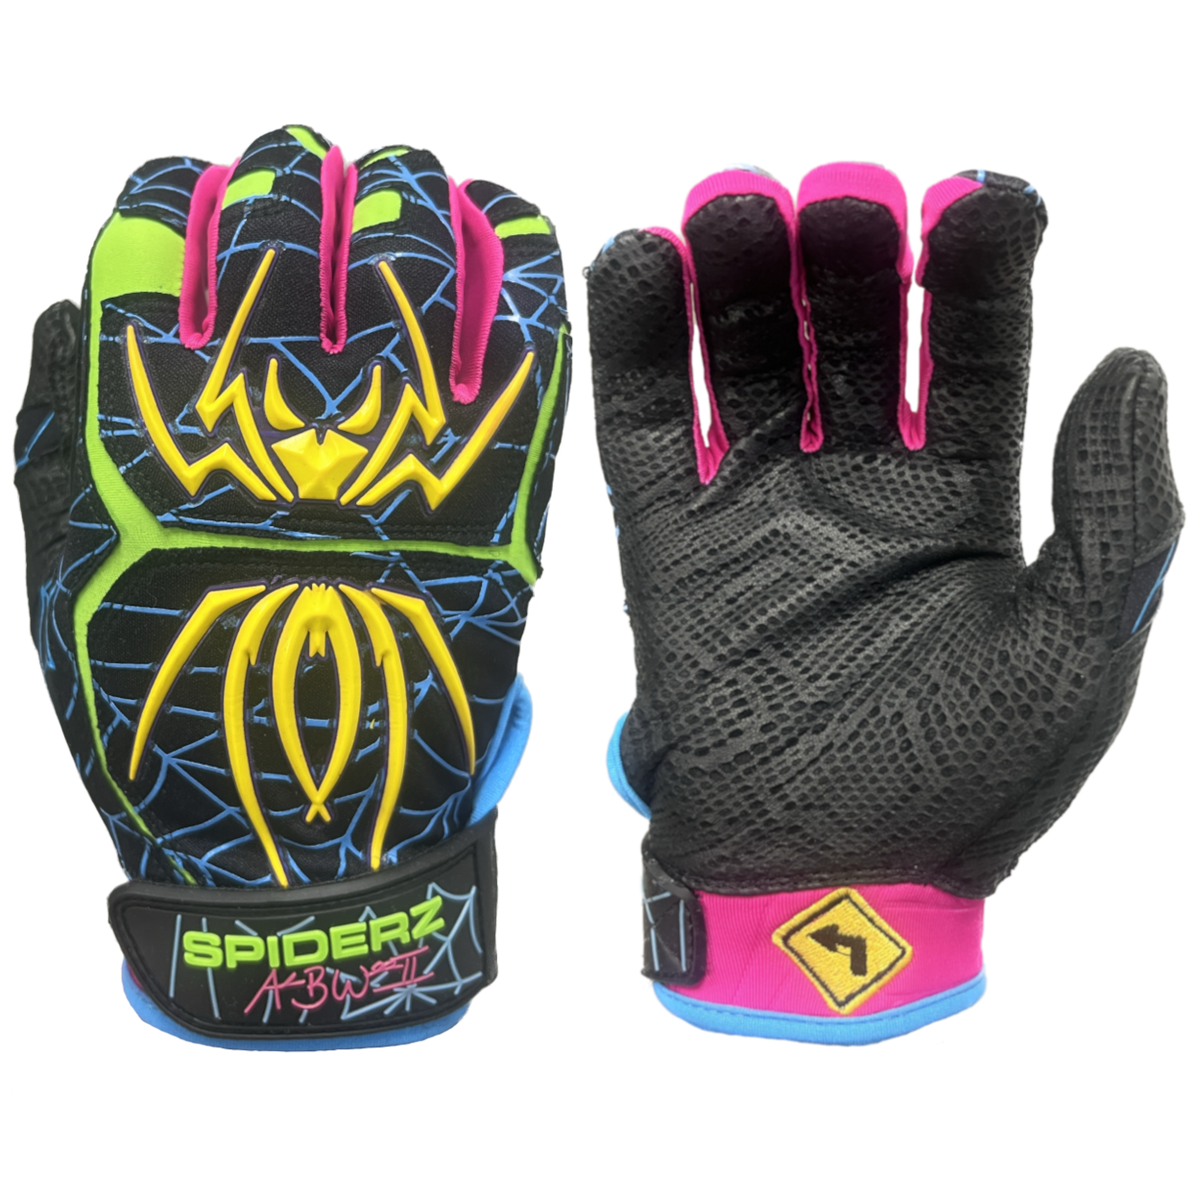 Spiderz ENDITE Batting Gloves - 